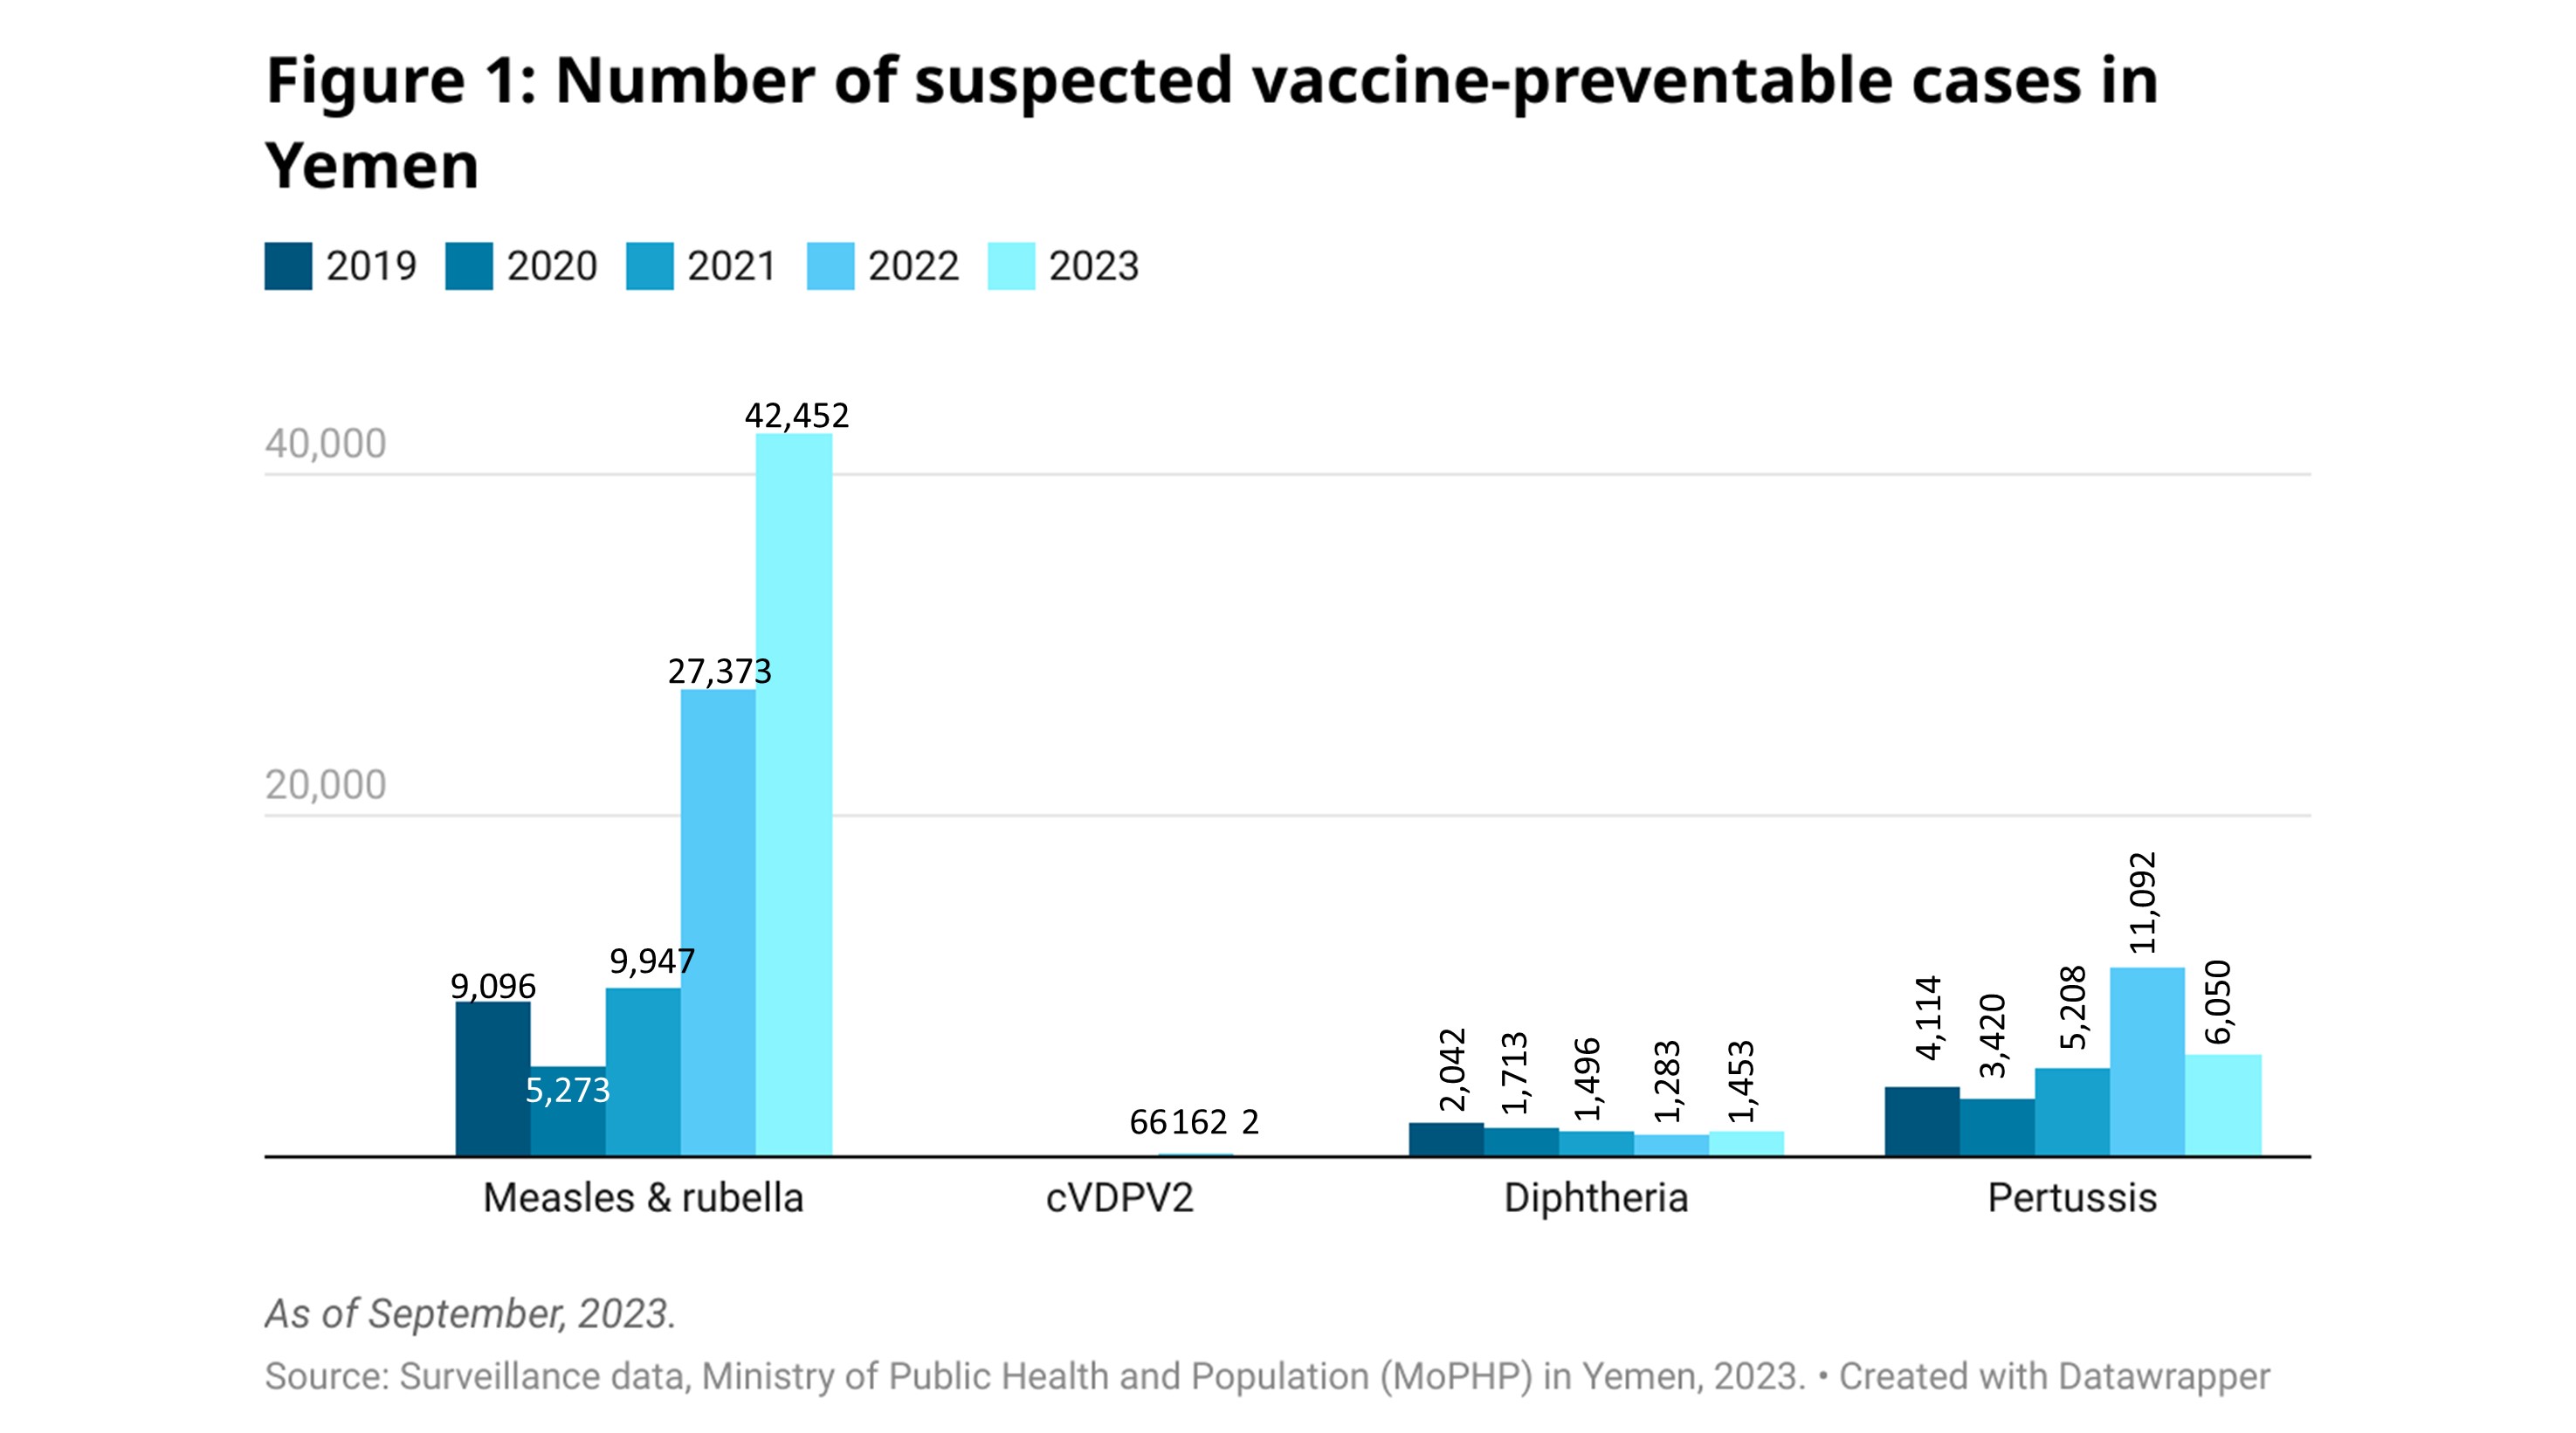 Number of suspected vaccine preventable diseases in Yemen